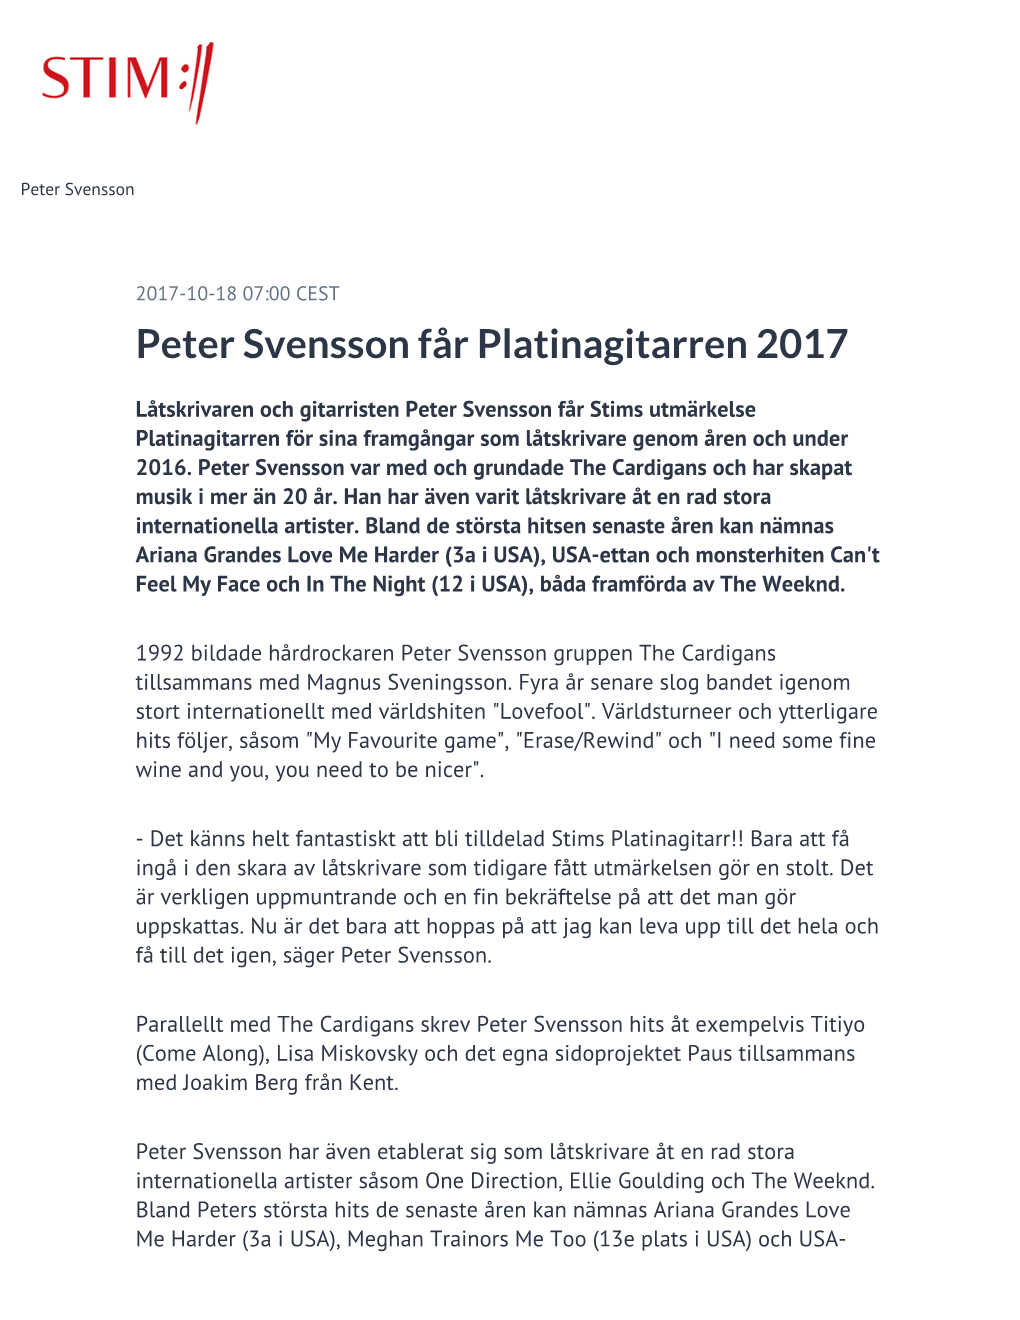 Peter Svensson Får Platinagitarren 2017